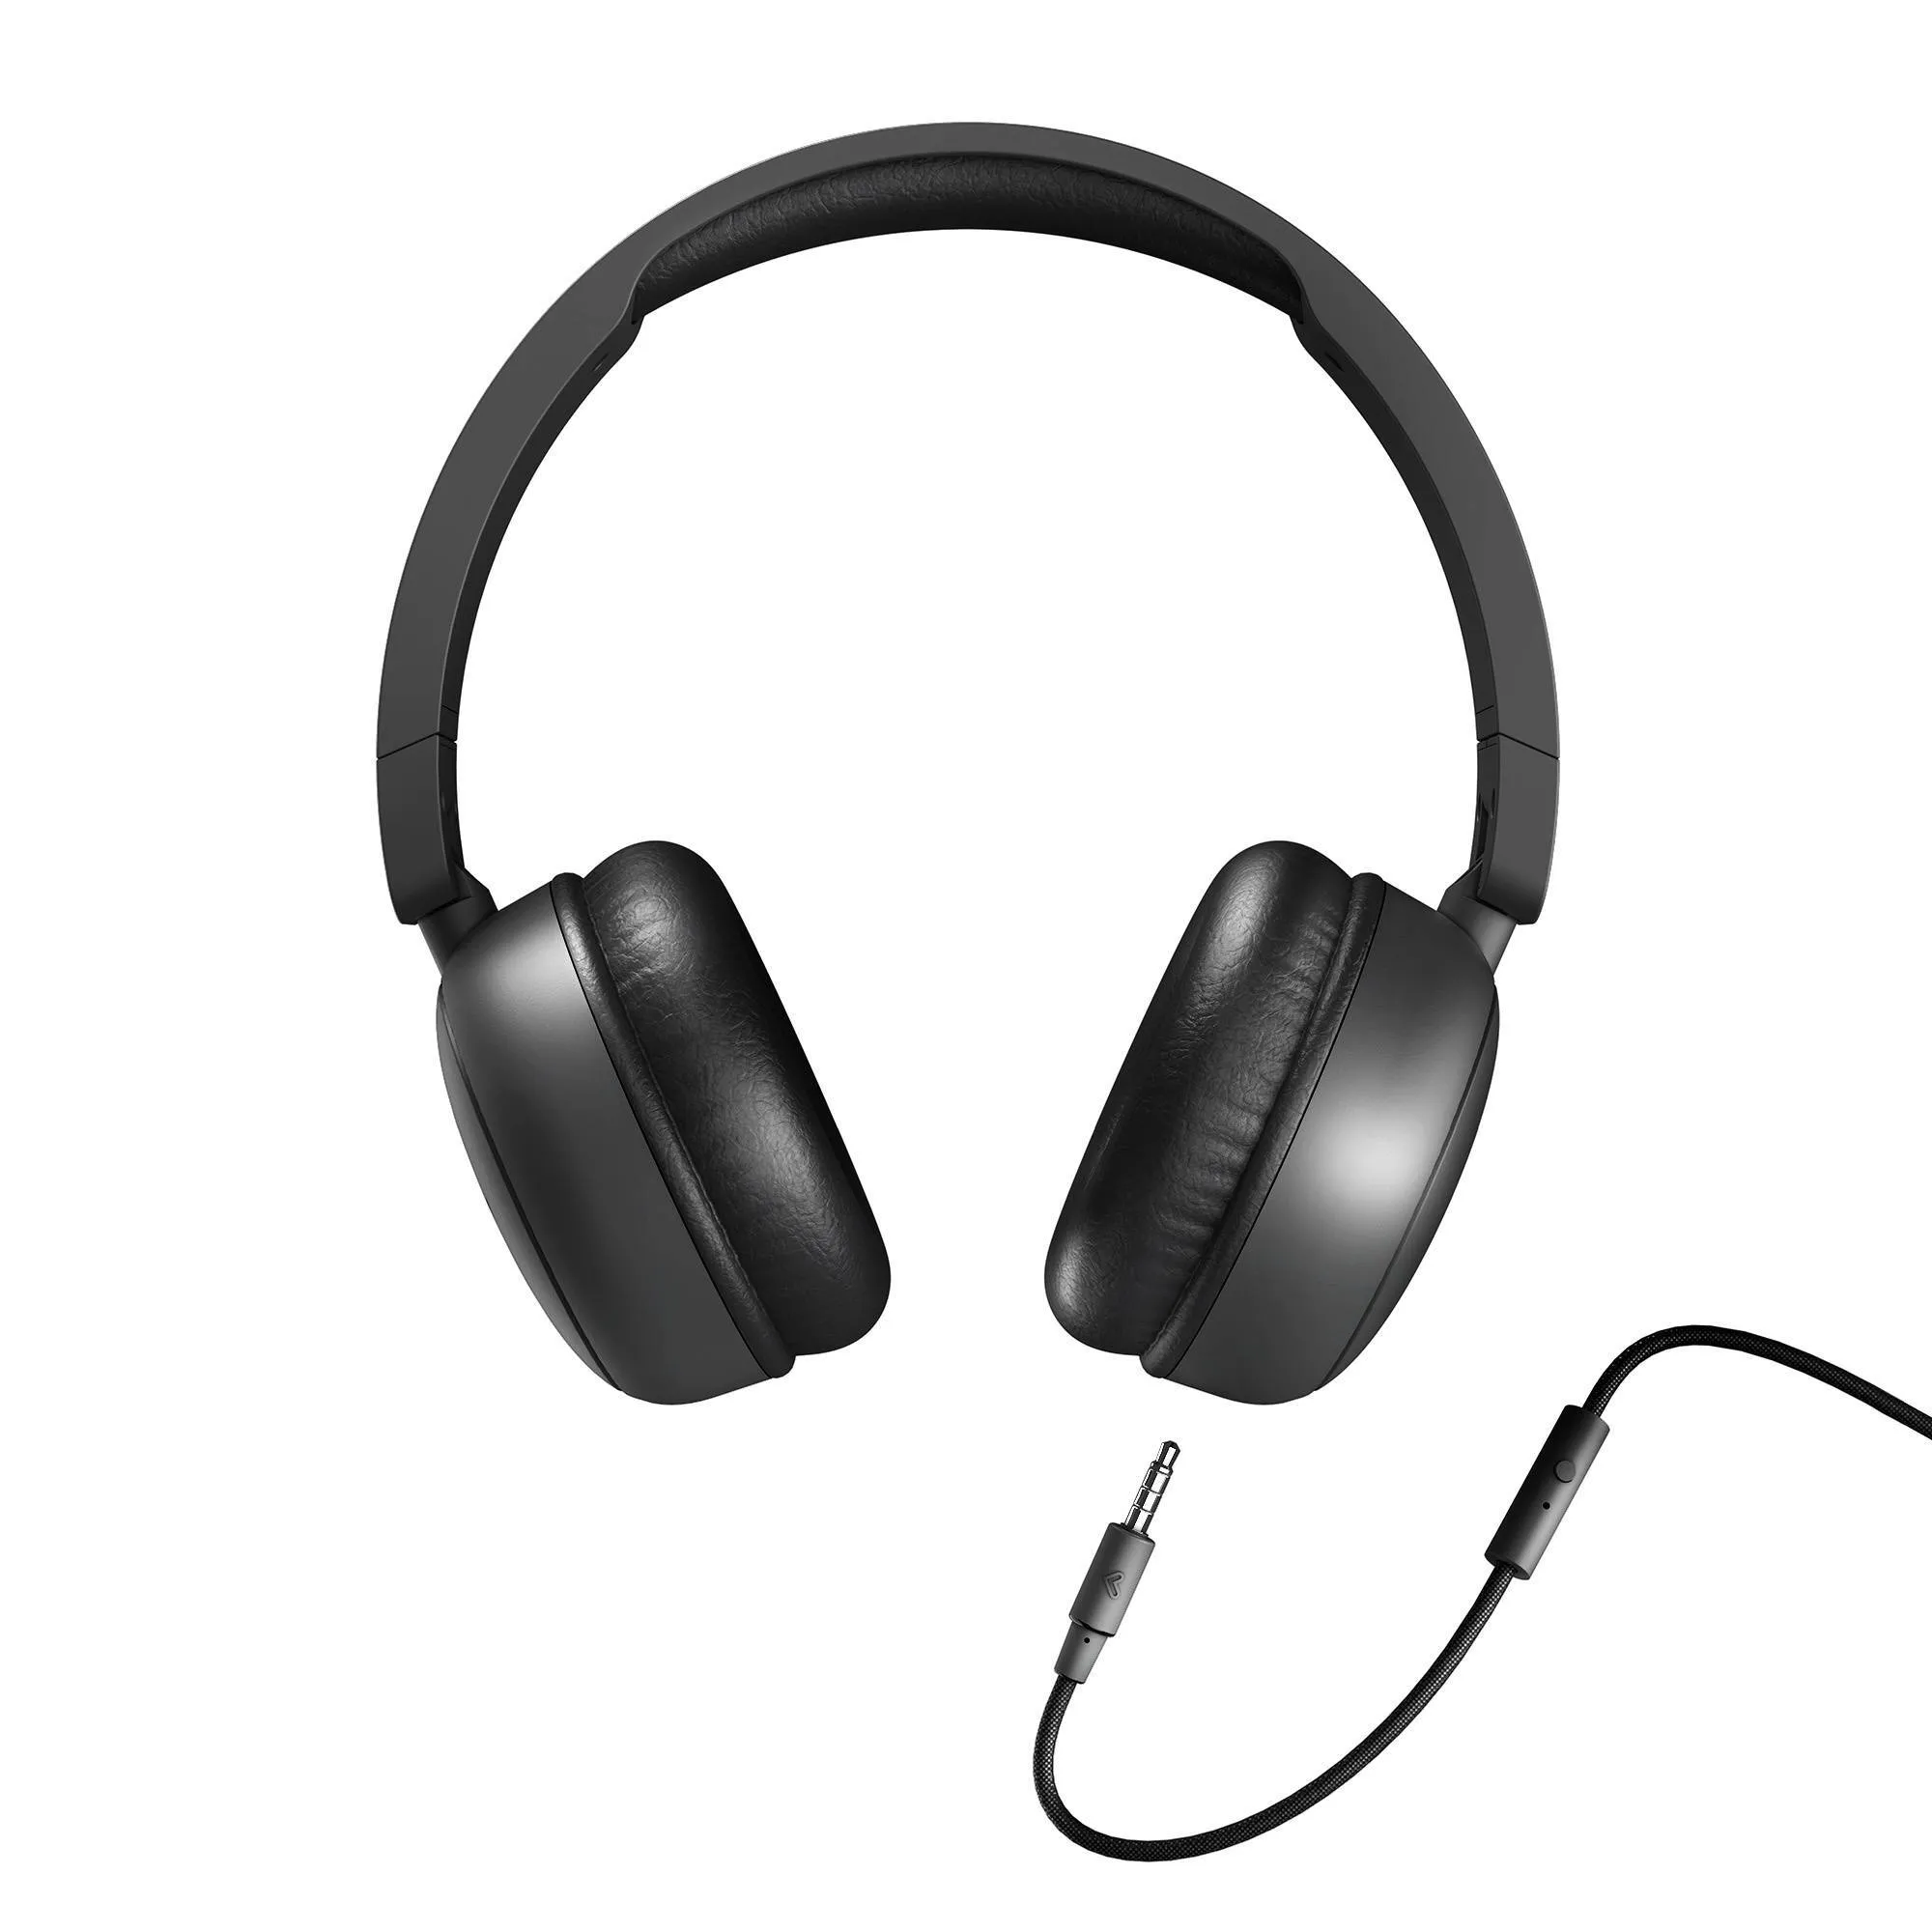 Kopfhörer Soundspire mit abtrennbarem Kabel für mehr Komfort und Sicherheit